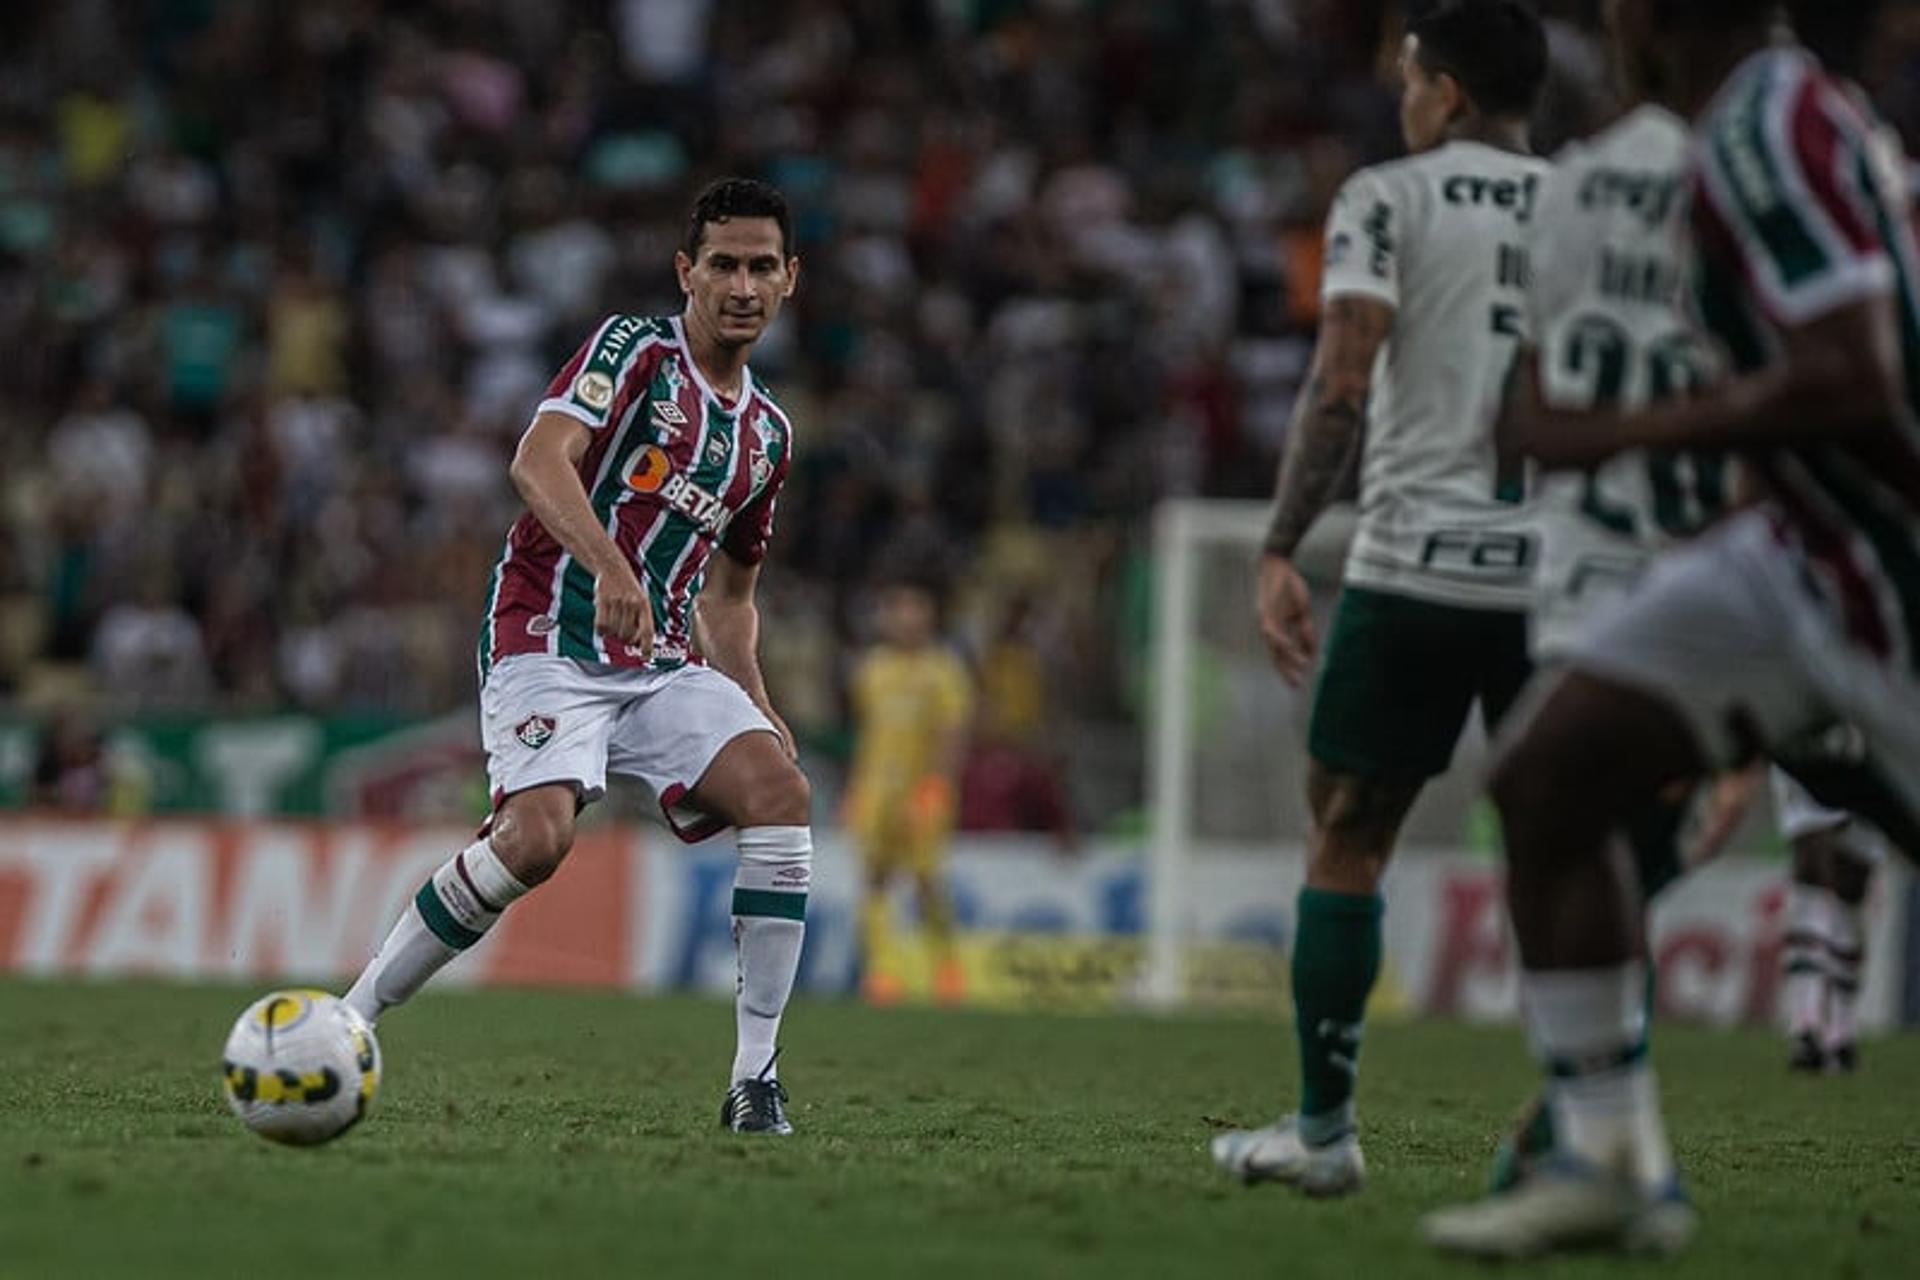 Fluminense x Palmeiras - Ganso